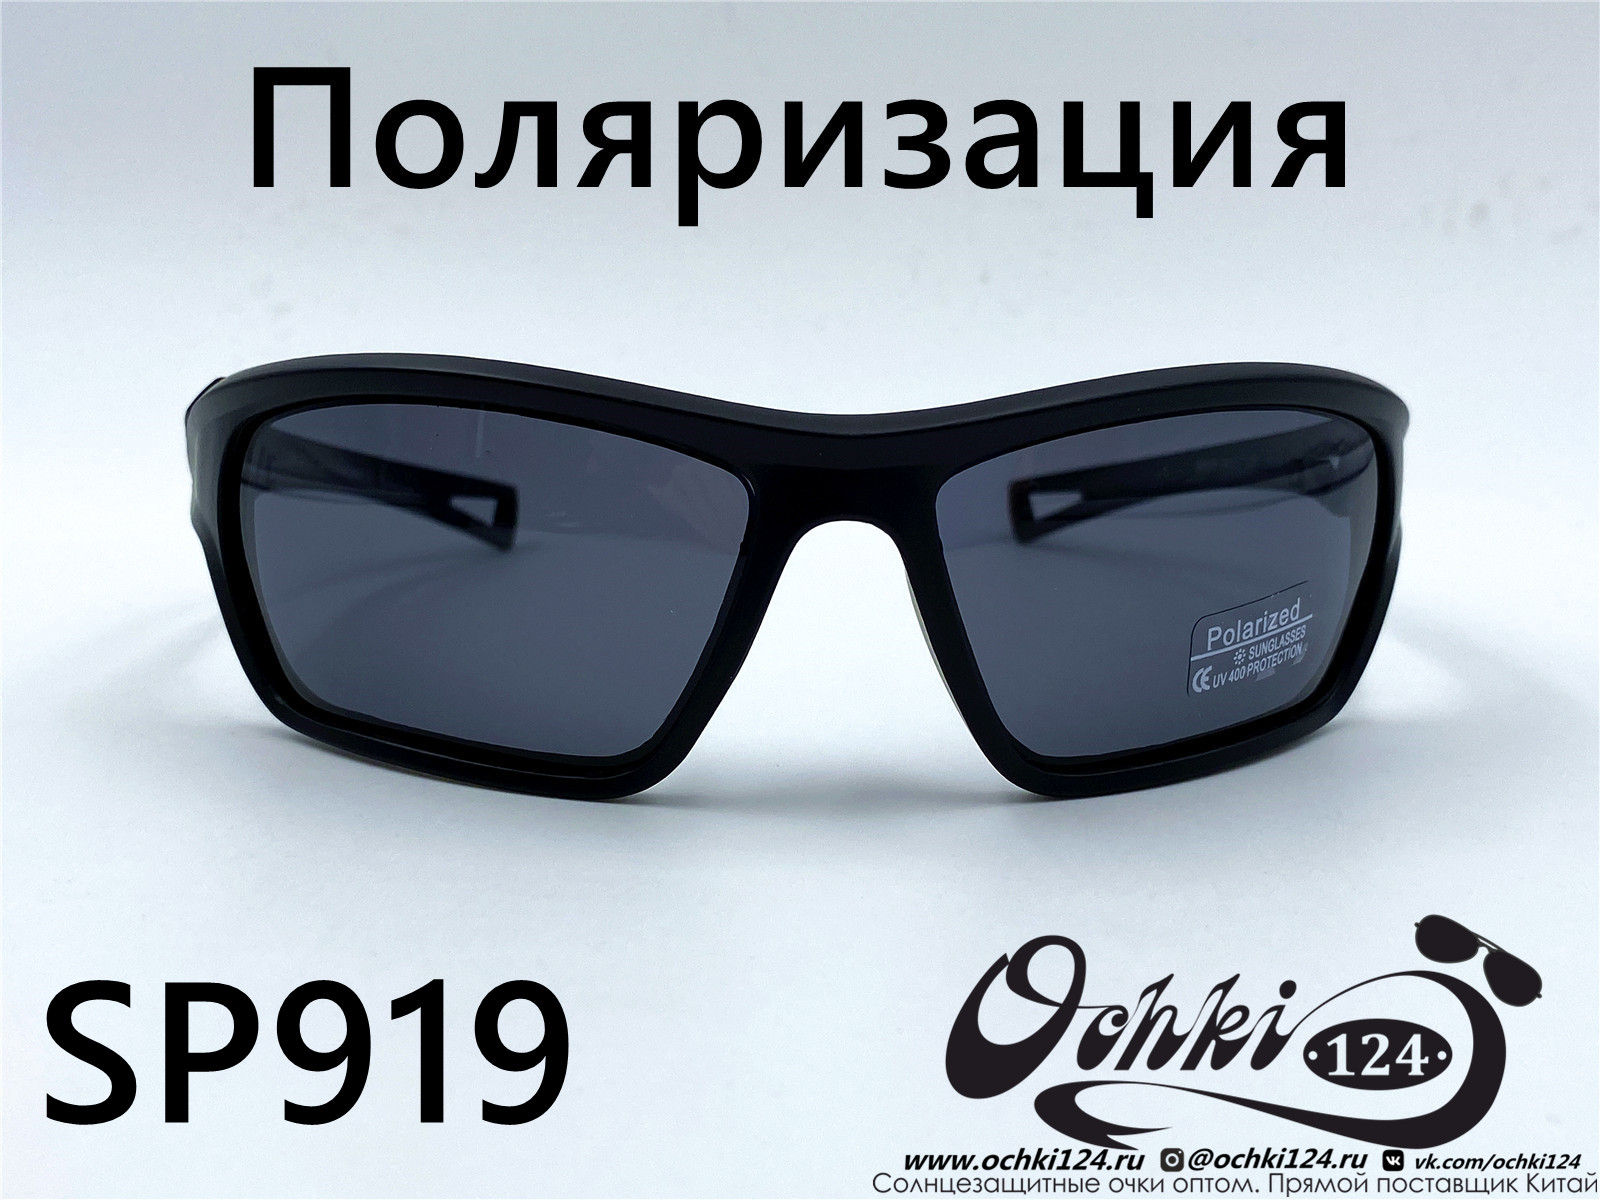  Солнцезащитные очки картинка 2022 Мужские Поляризованные Спорт Materice SP919-2 